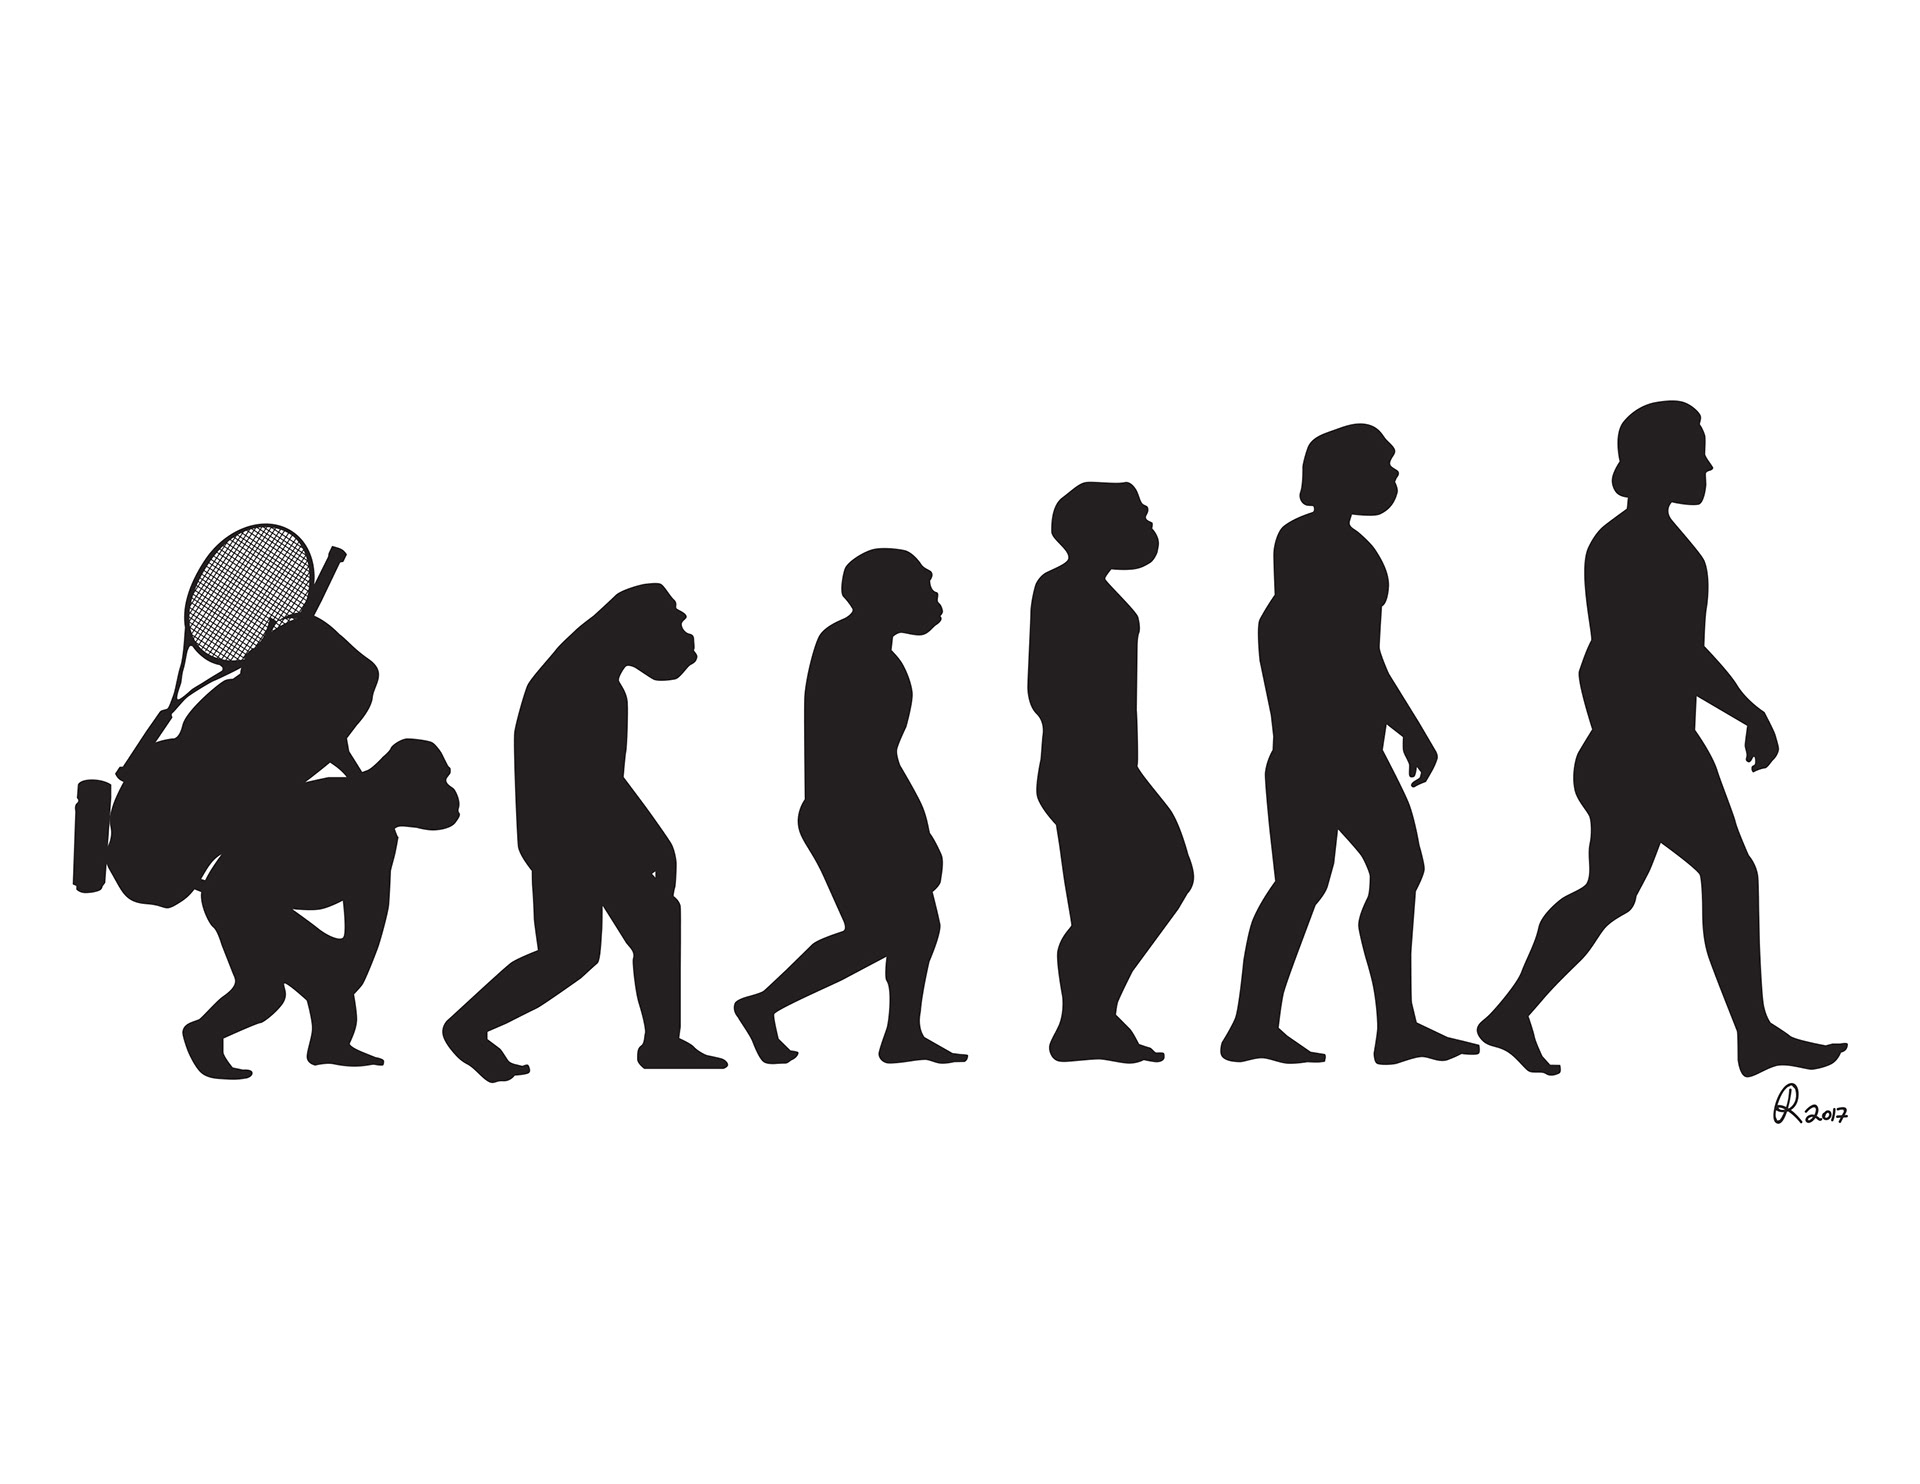 Эволюция человека рисунок